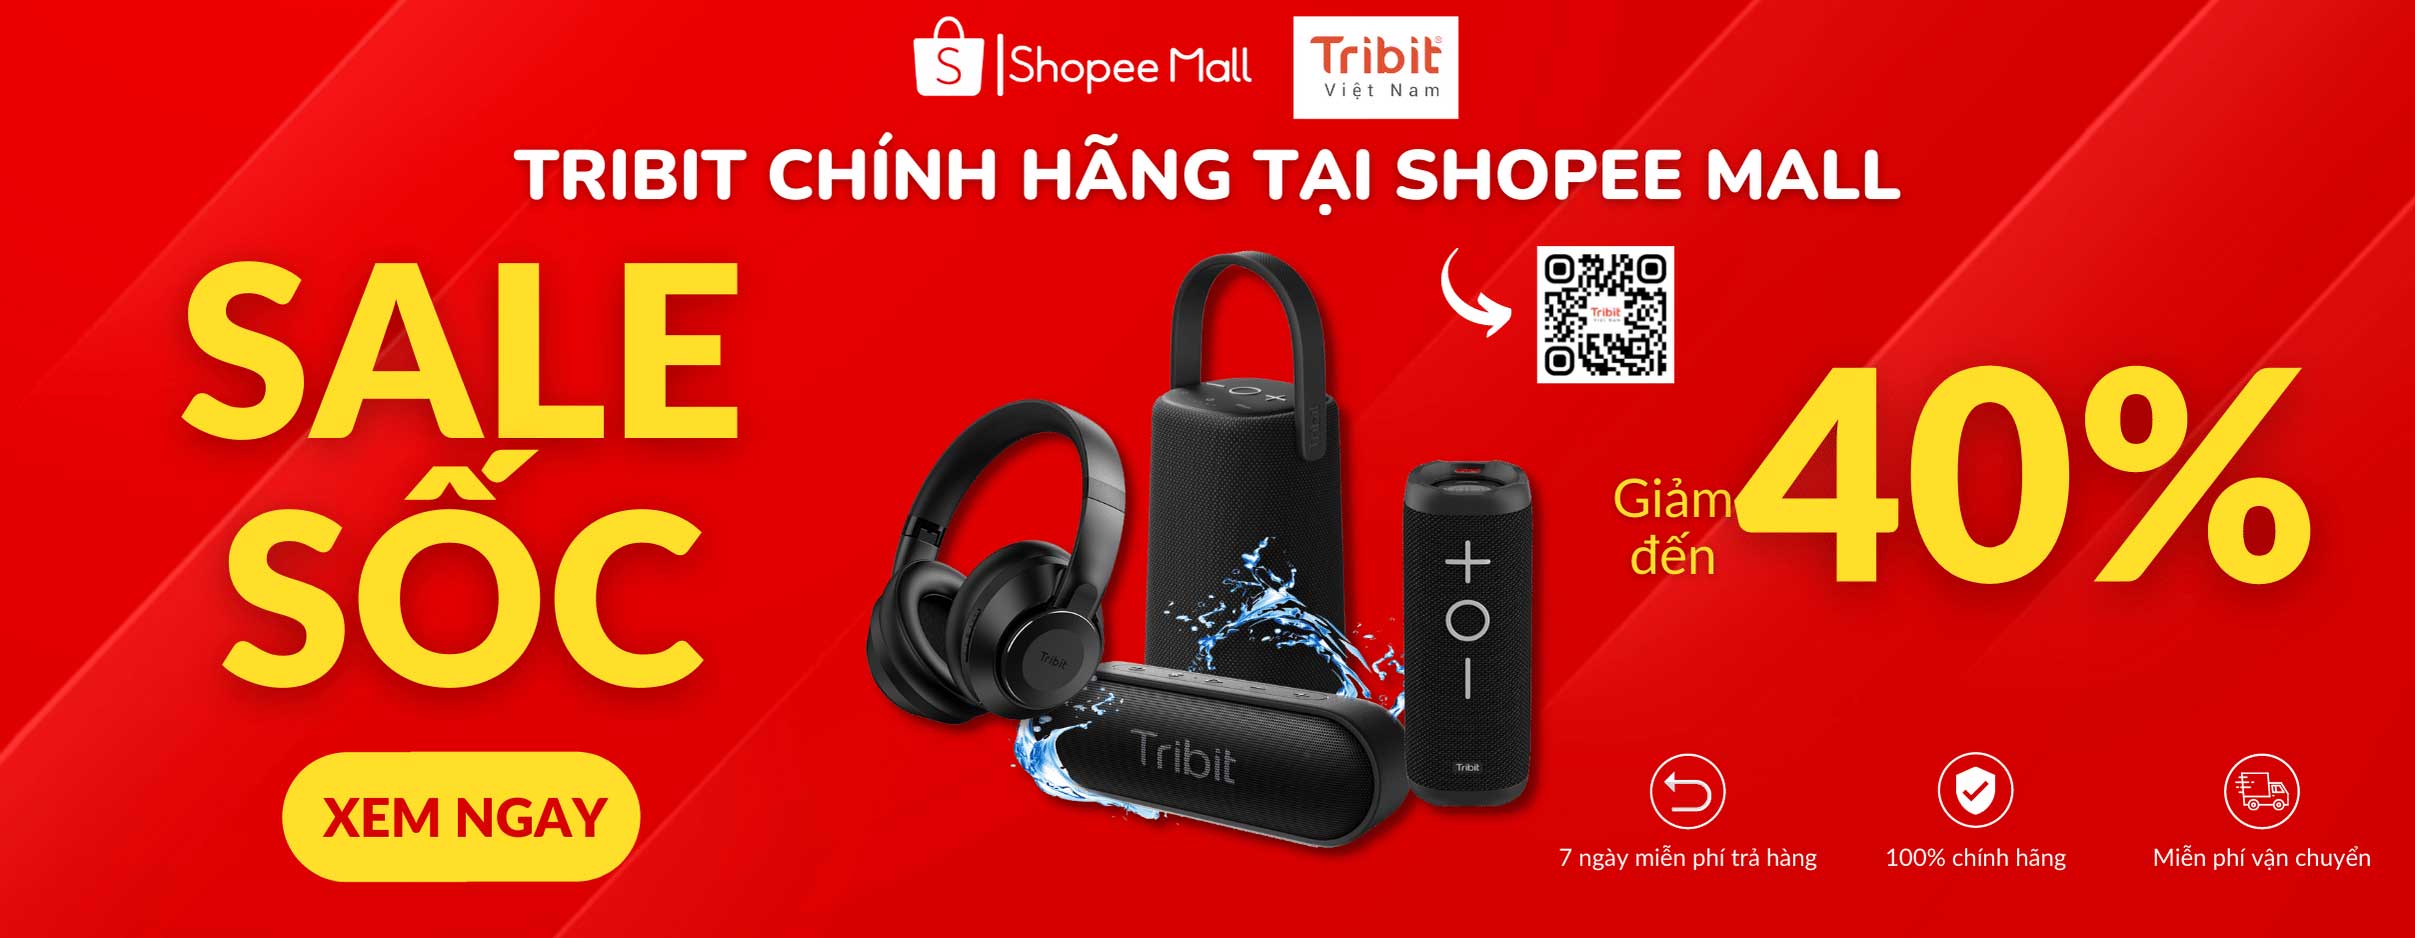 Tribit Việt Nam tại Shopee Mall